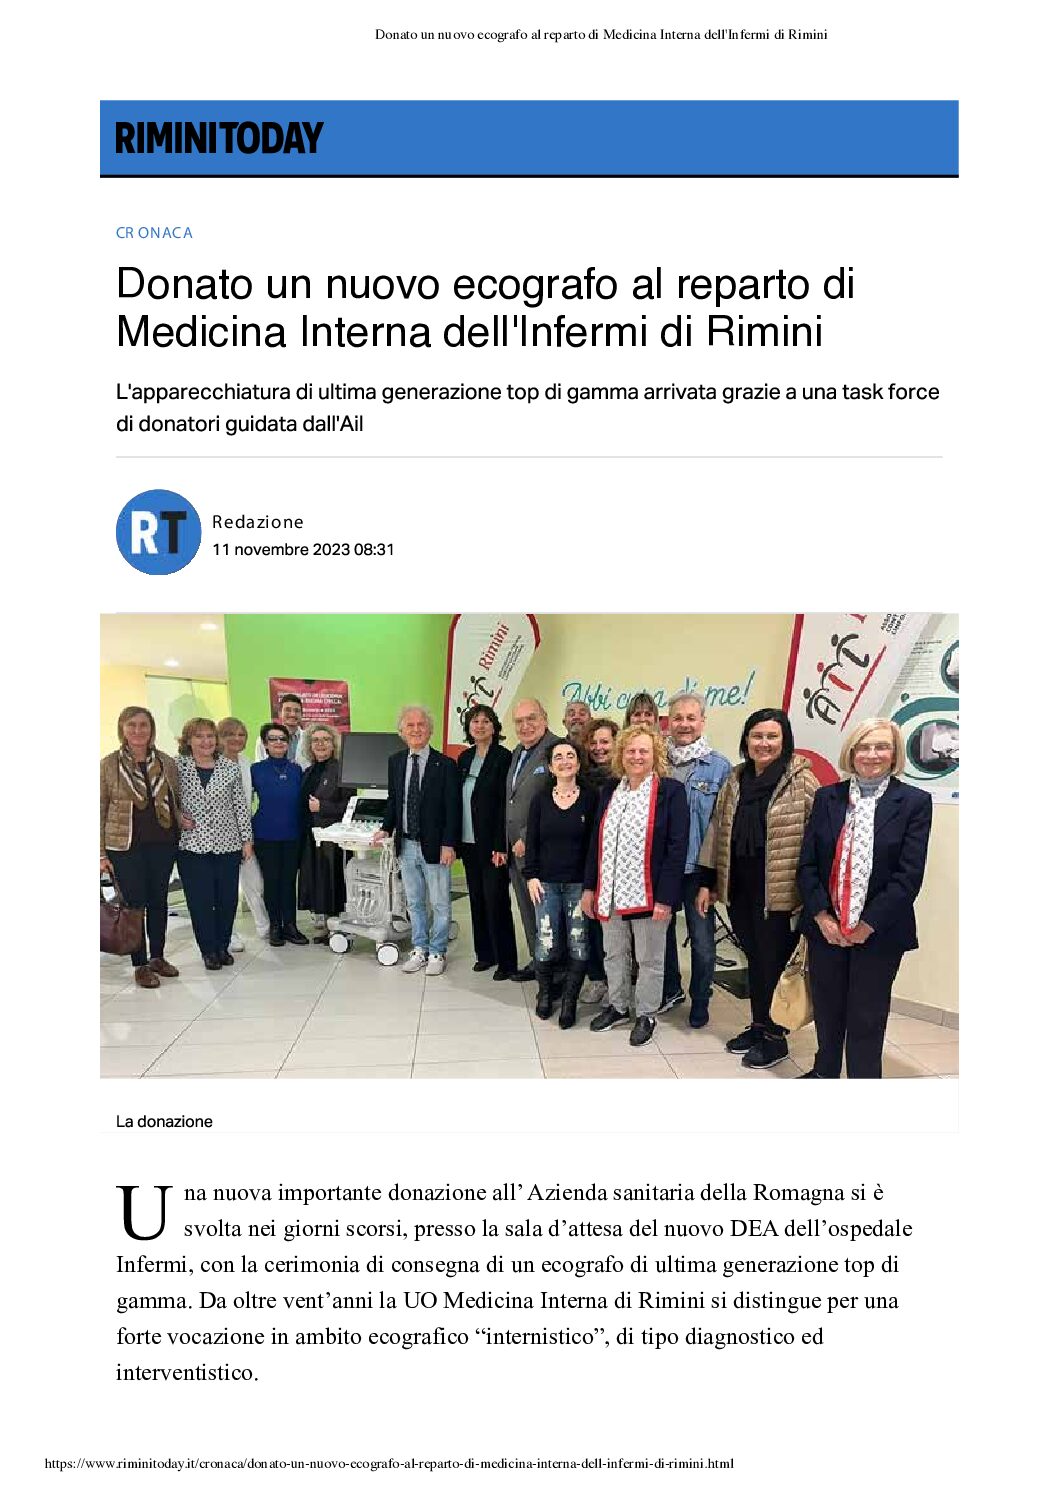 RiminiToday - Donato ecografo Medicina Interna Infermi Rimini 11-11-23